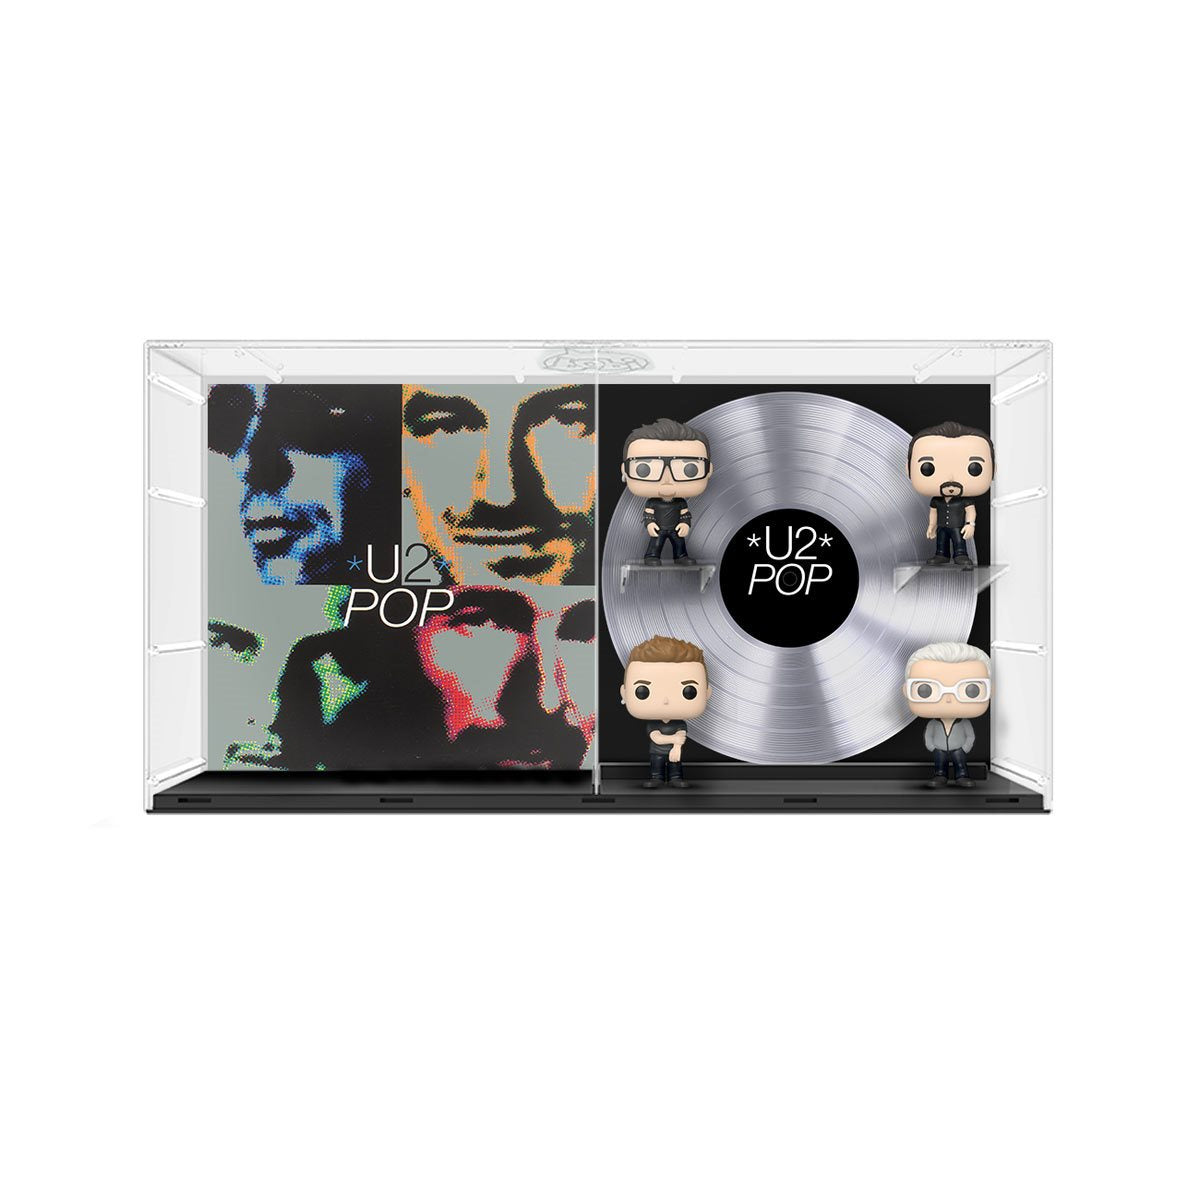 Funko Pop Album Deluxe: U2 - POP